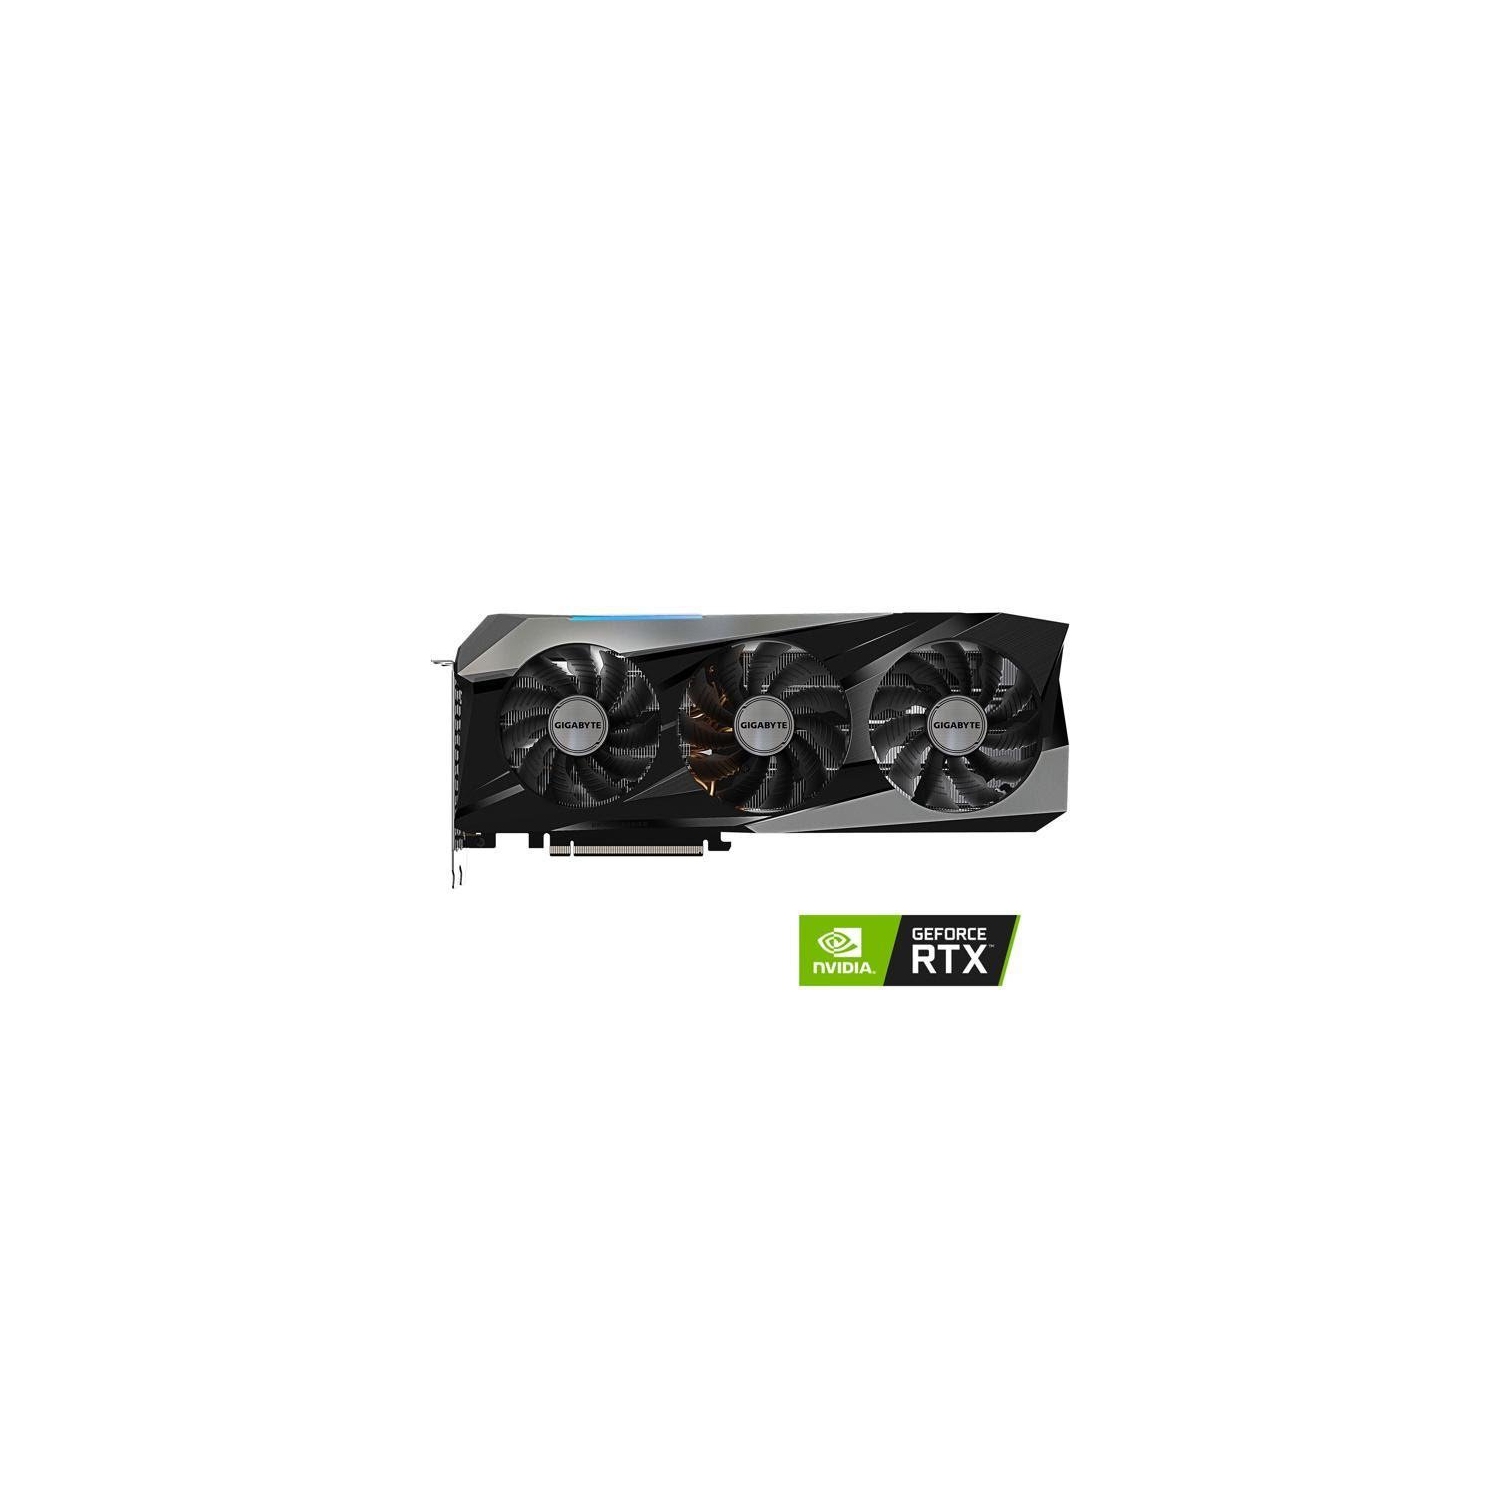 GIGABYTE Gaming GeForce RTX 3070 Ti 8GB GDDR6X PCI Express 4.0 x16 ATX Video Card GV-N307TGAMING OC-8GD